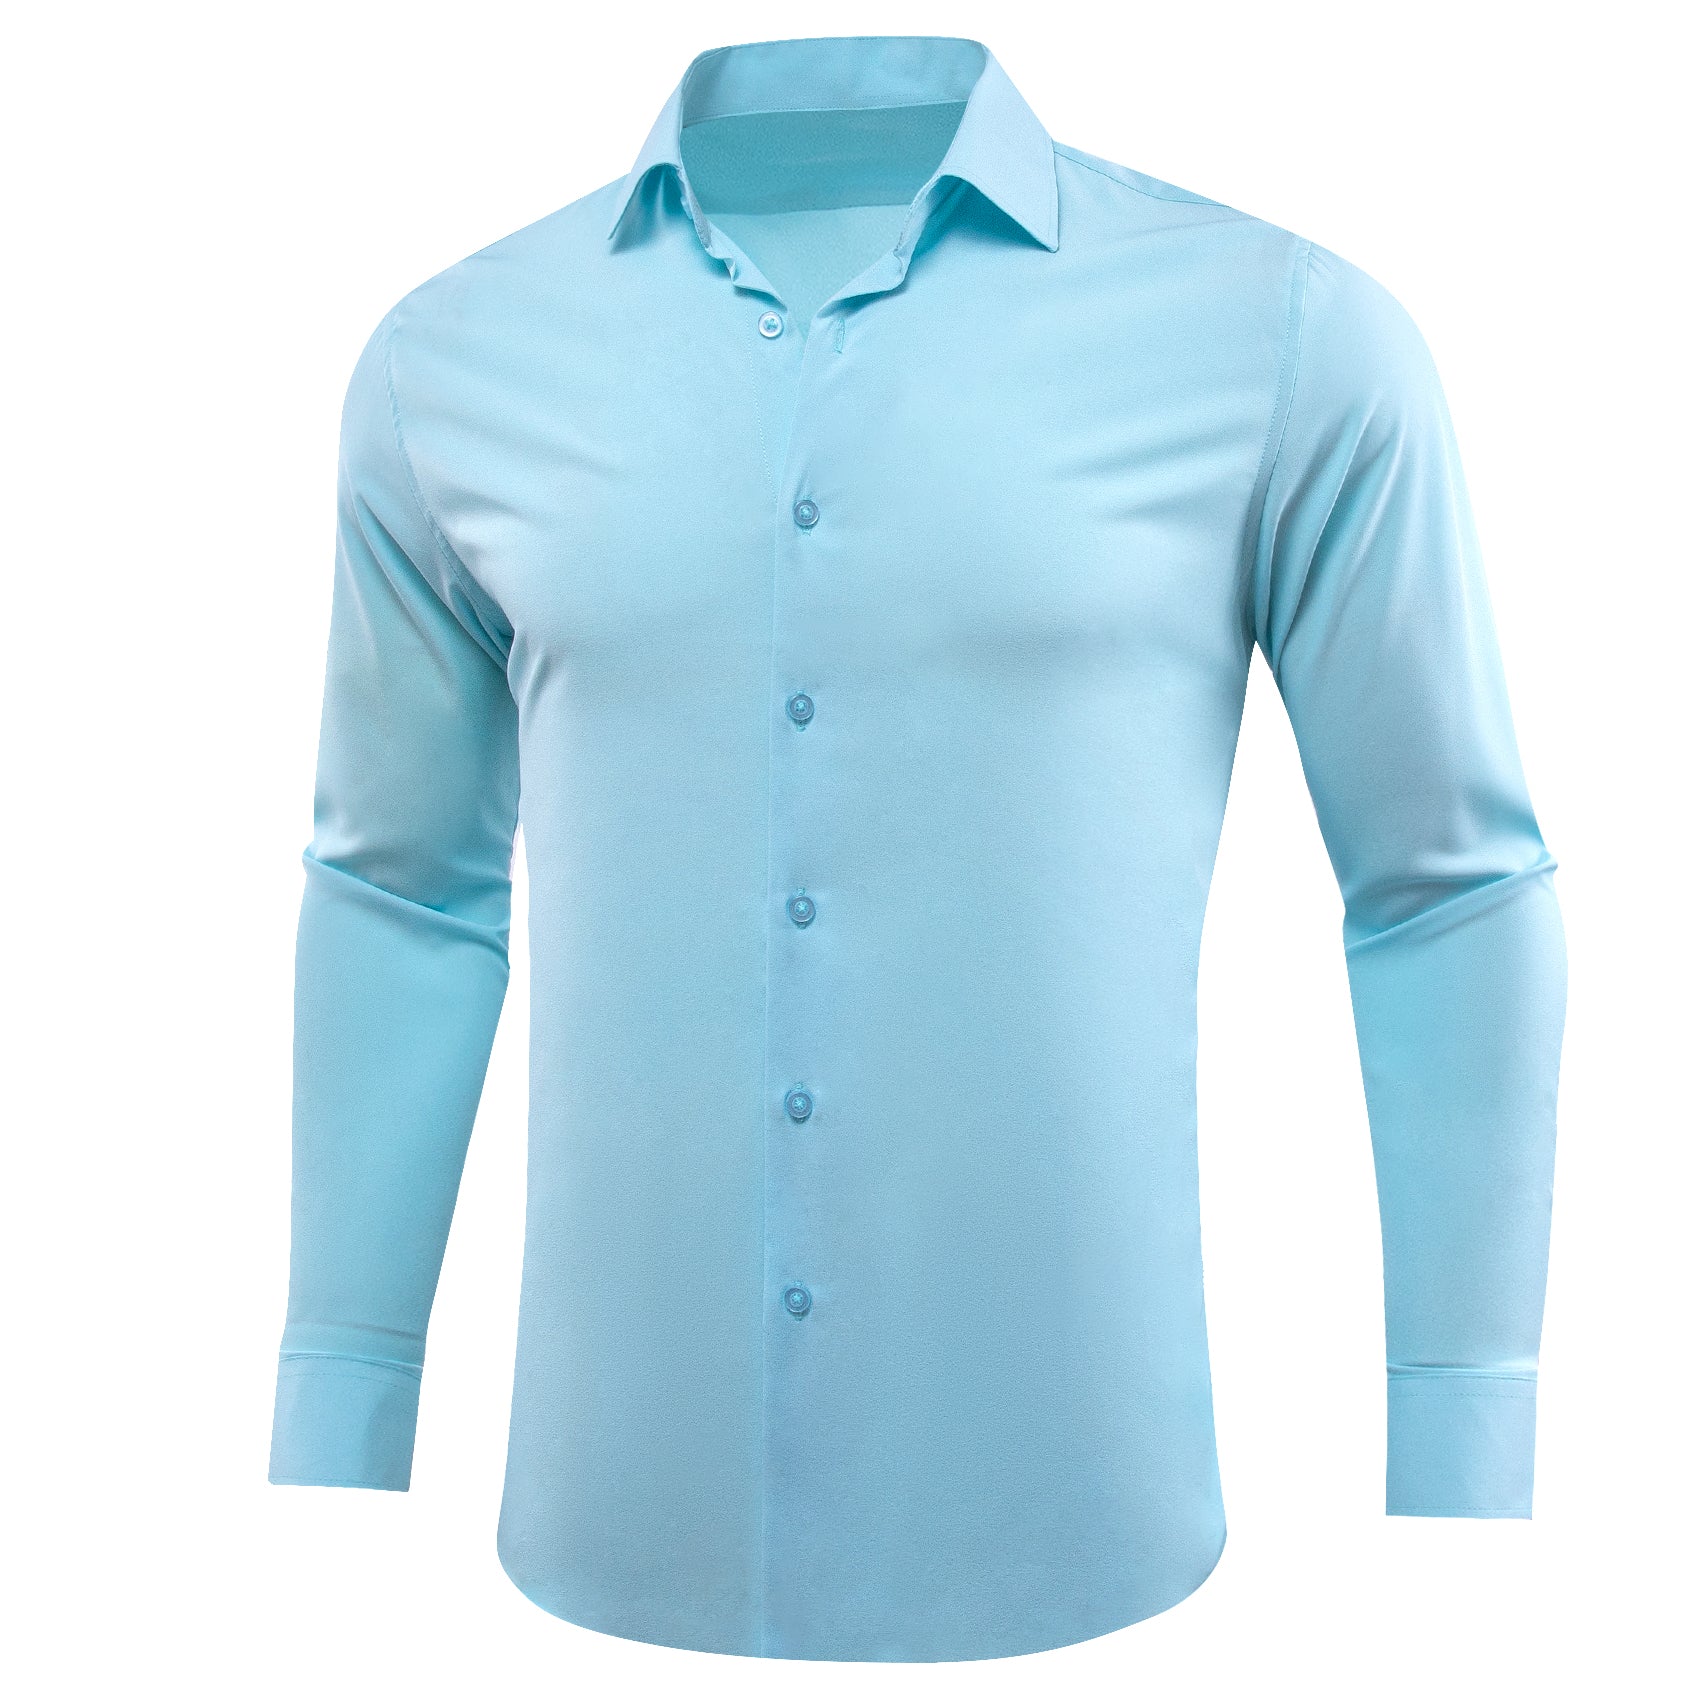 Barry.wang Sky Blue Solid Silk Shirt